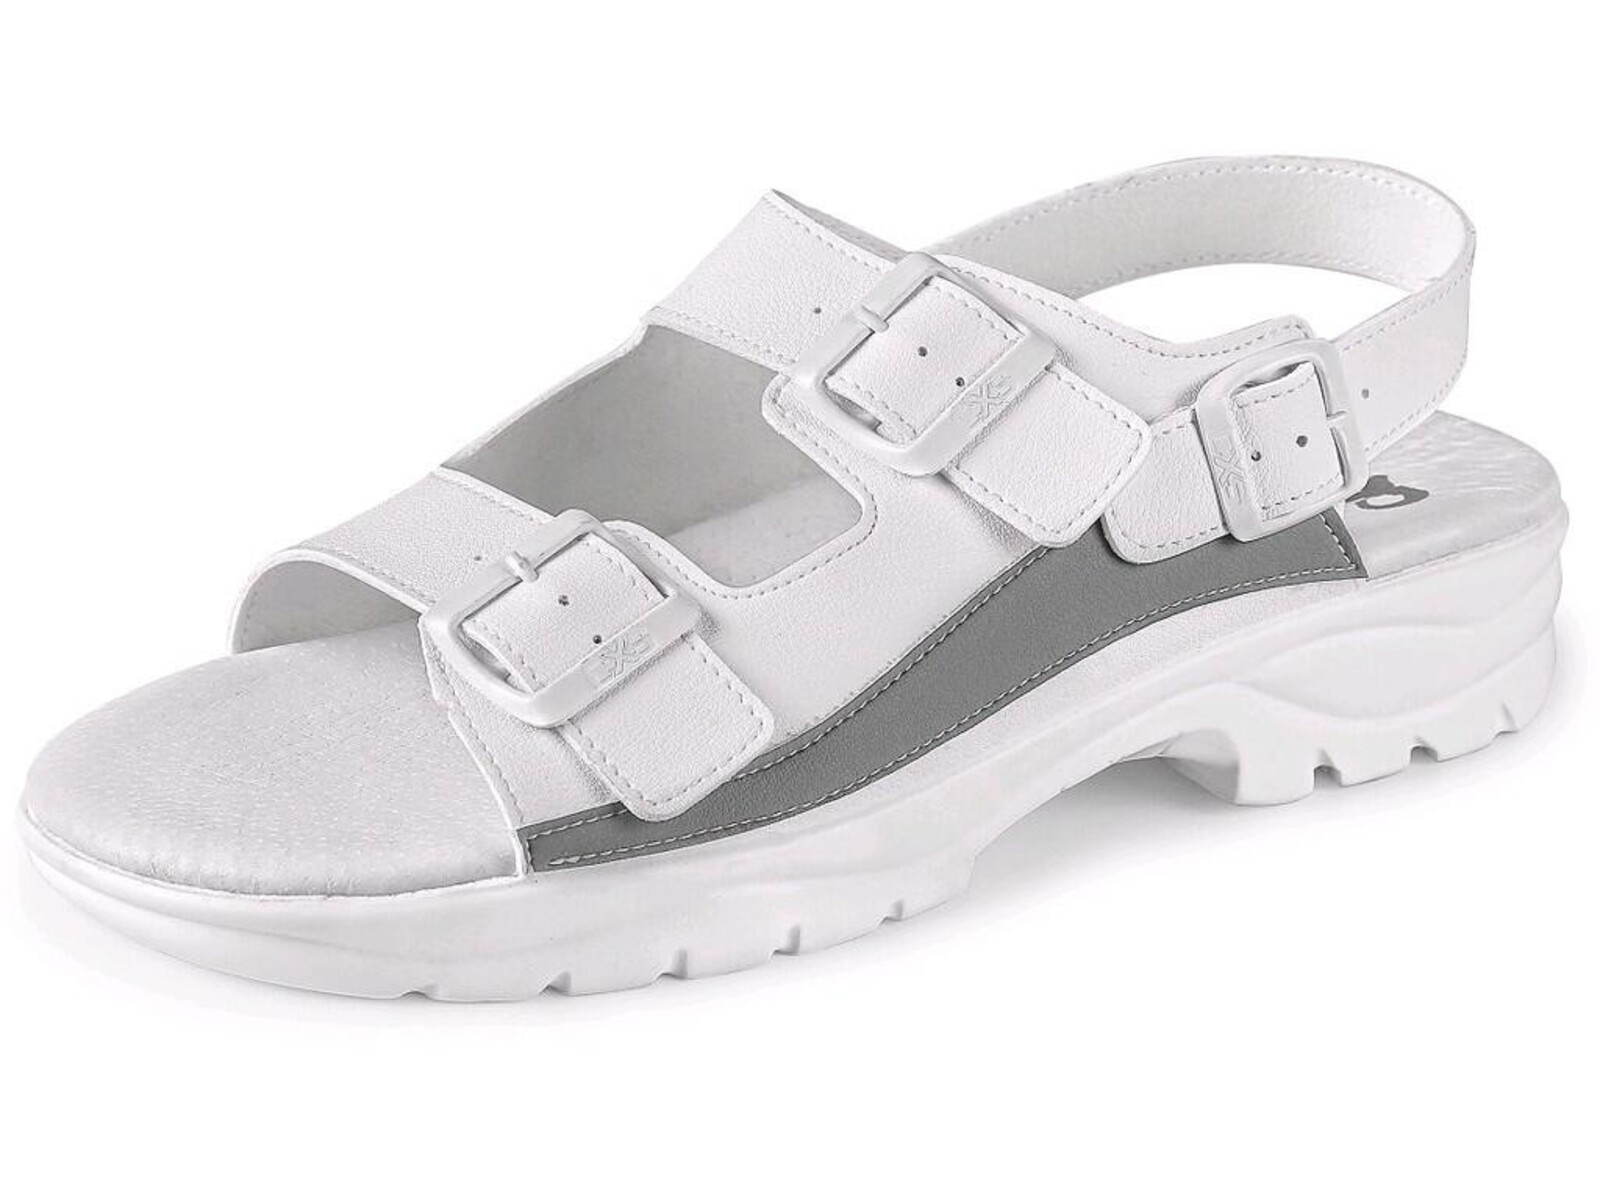 Pracovné sandále CXS Paola OB E A SRC - veľkosť: 47, farba: biela